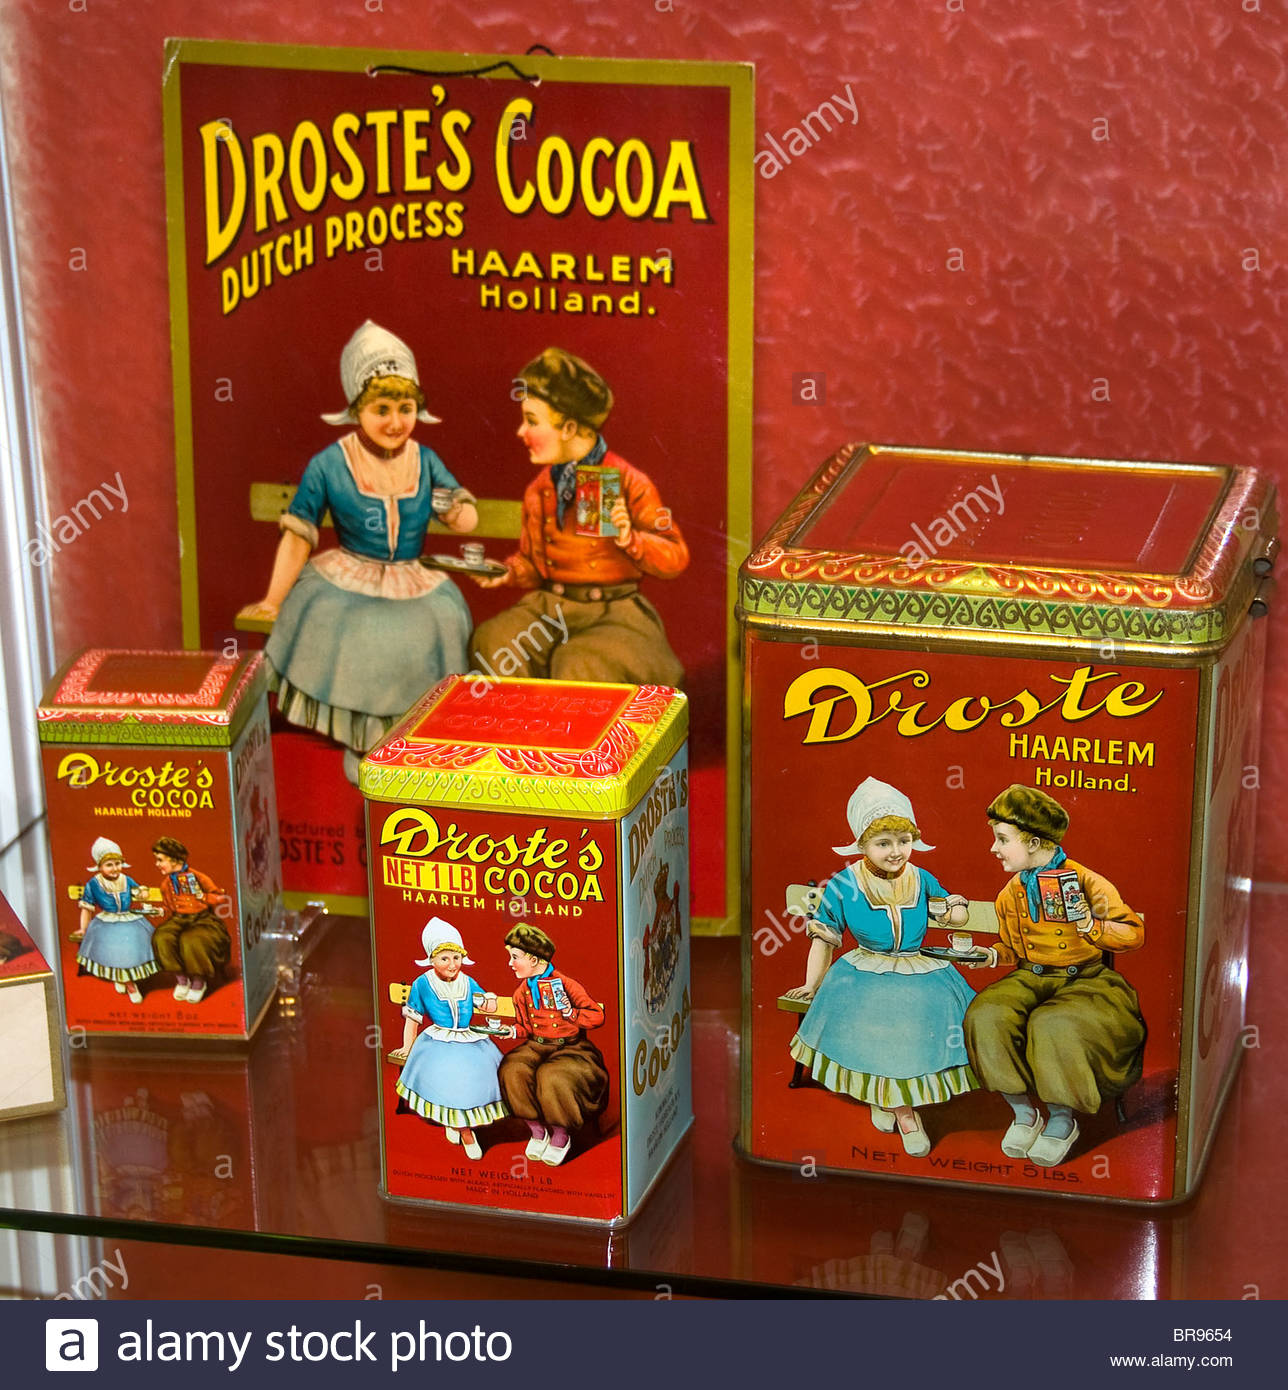 Hello ) droste cocoa